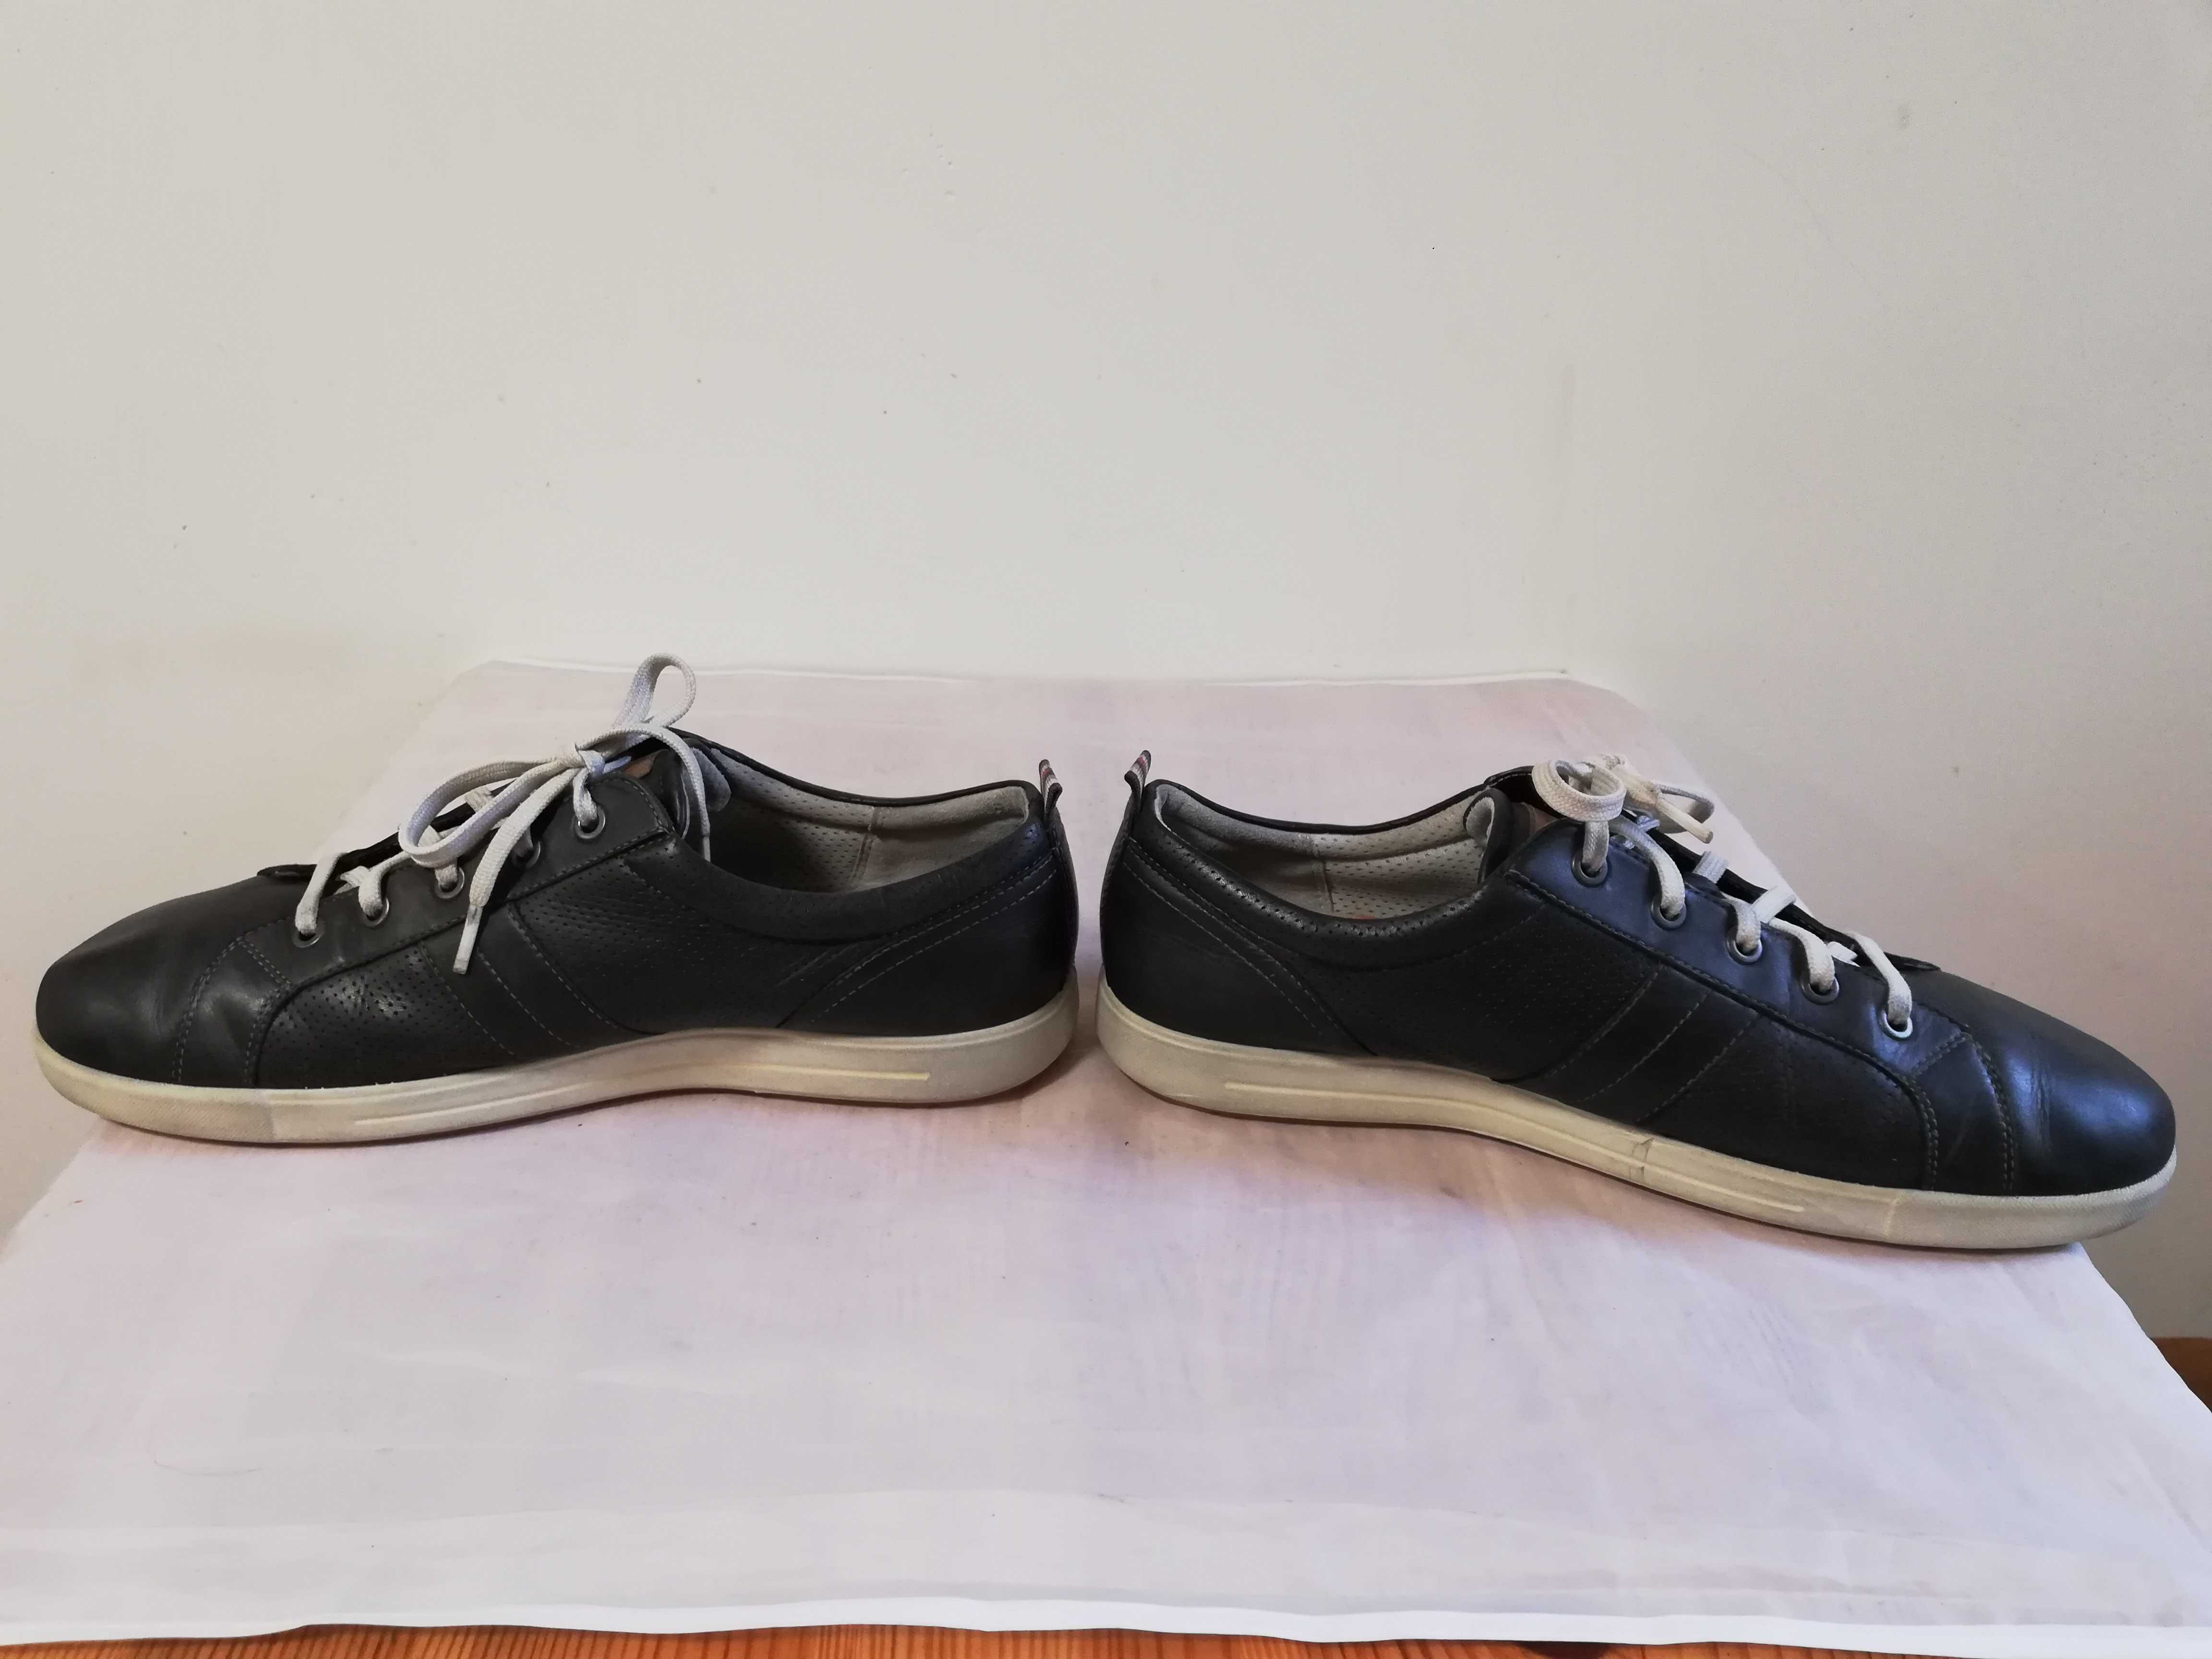 Buty męskie skórzane ECCO Soft r. 46 wkł 30,5 cm